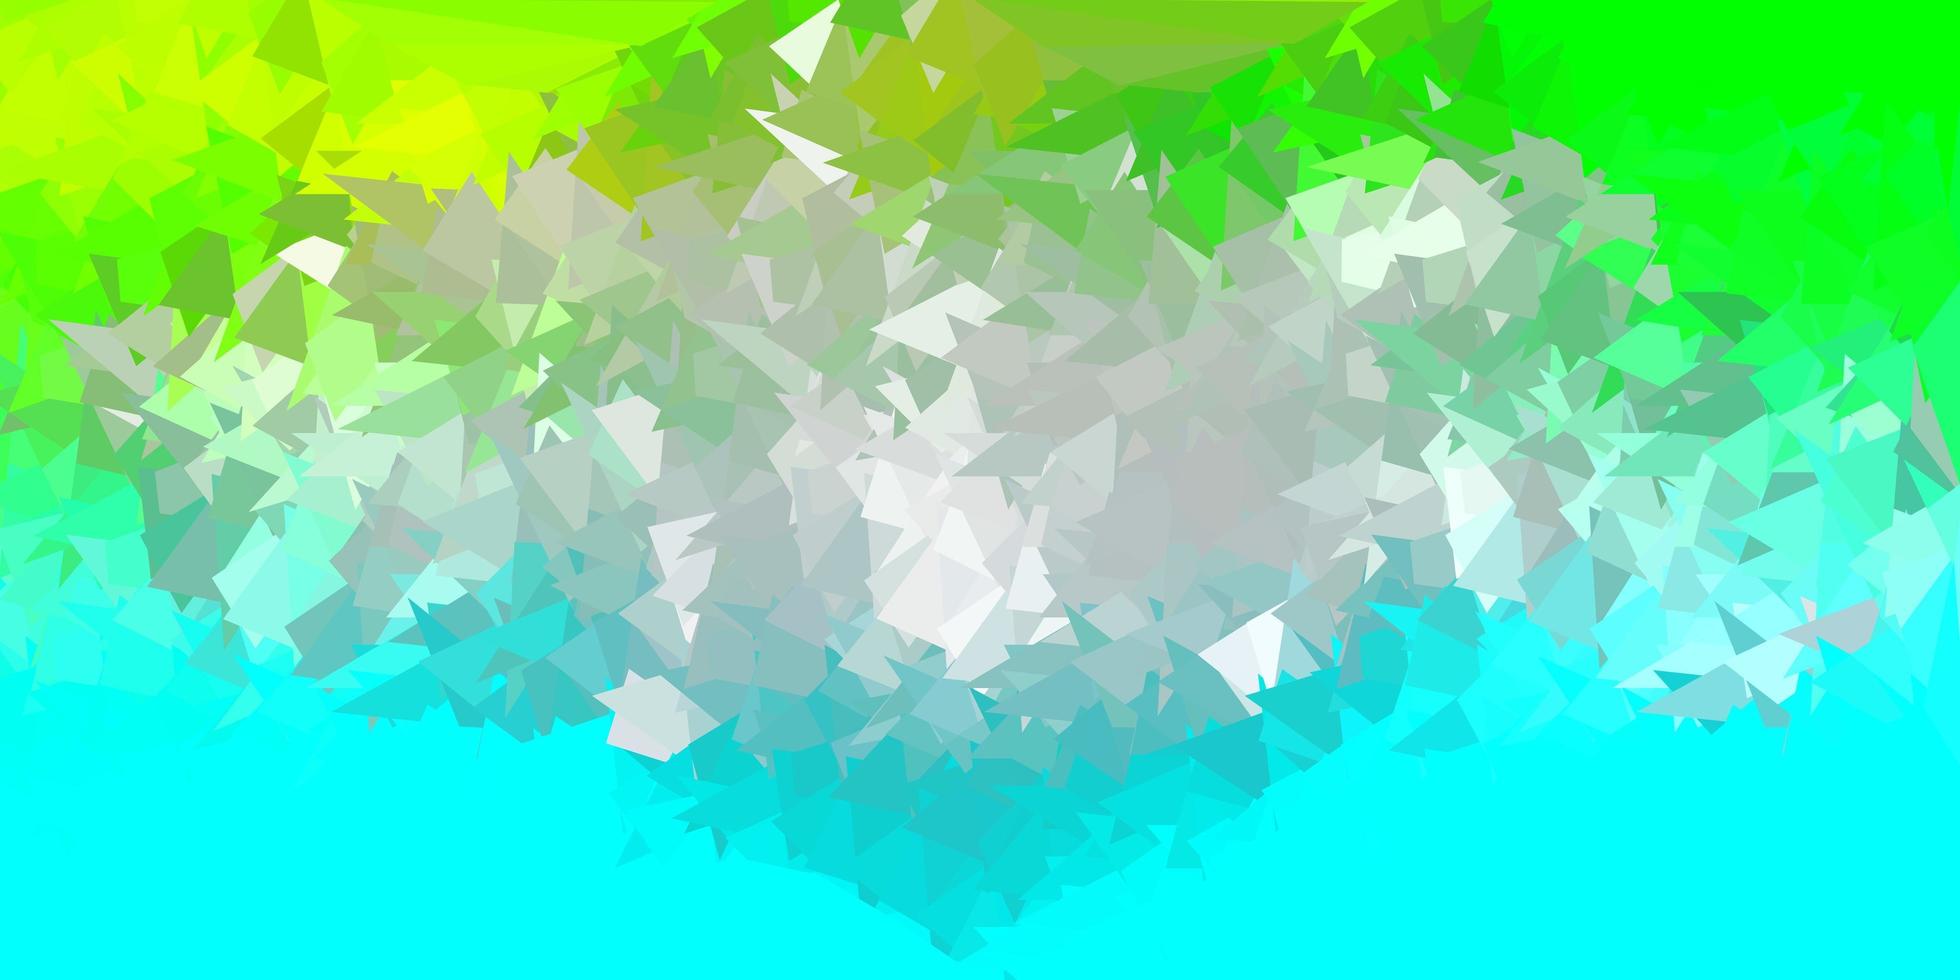 fundo do triângulo abstrato do vetor azul claro, verde.